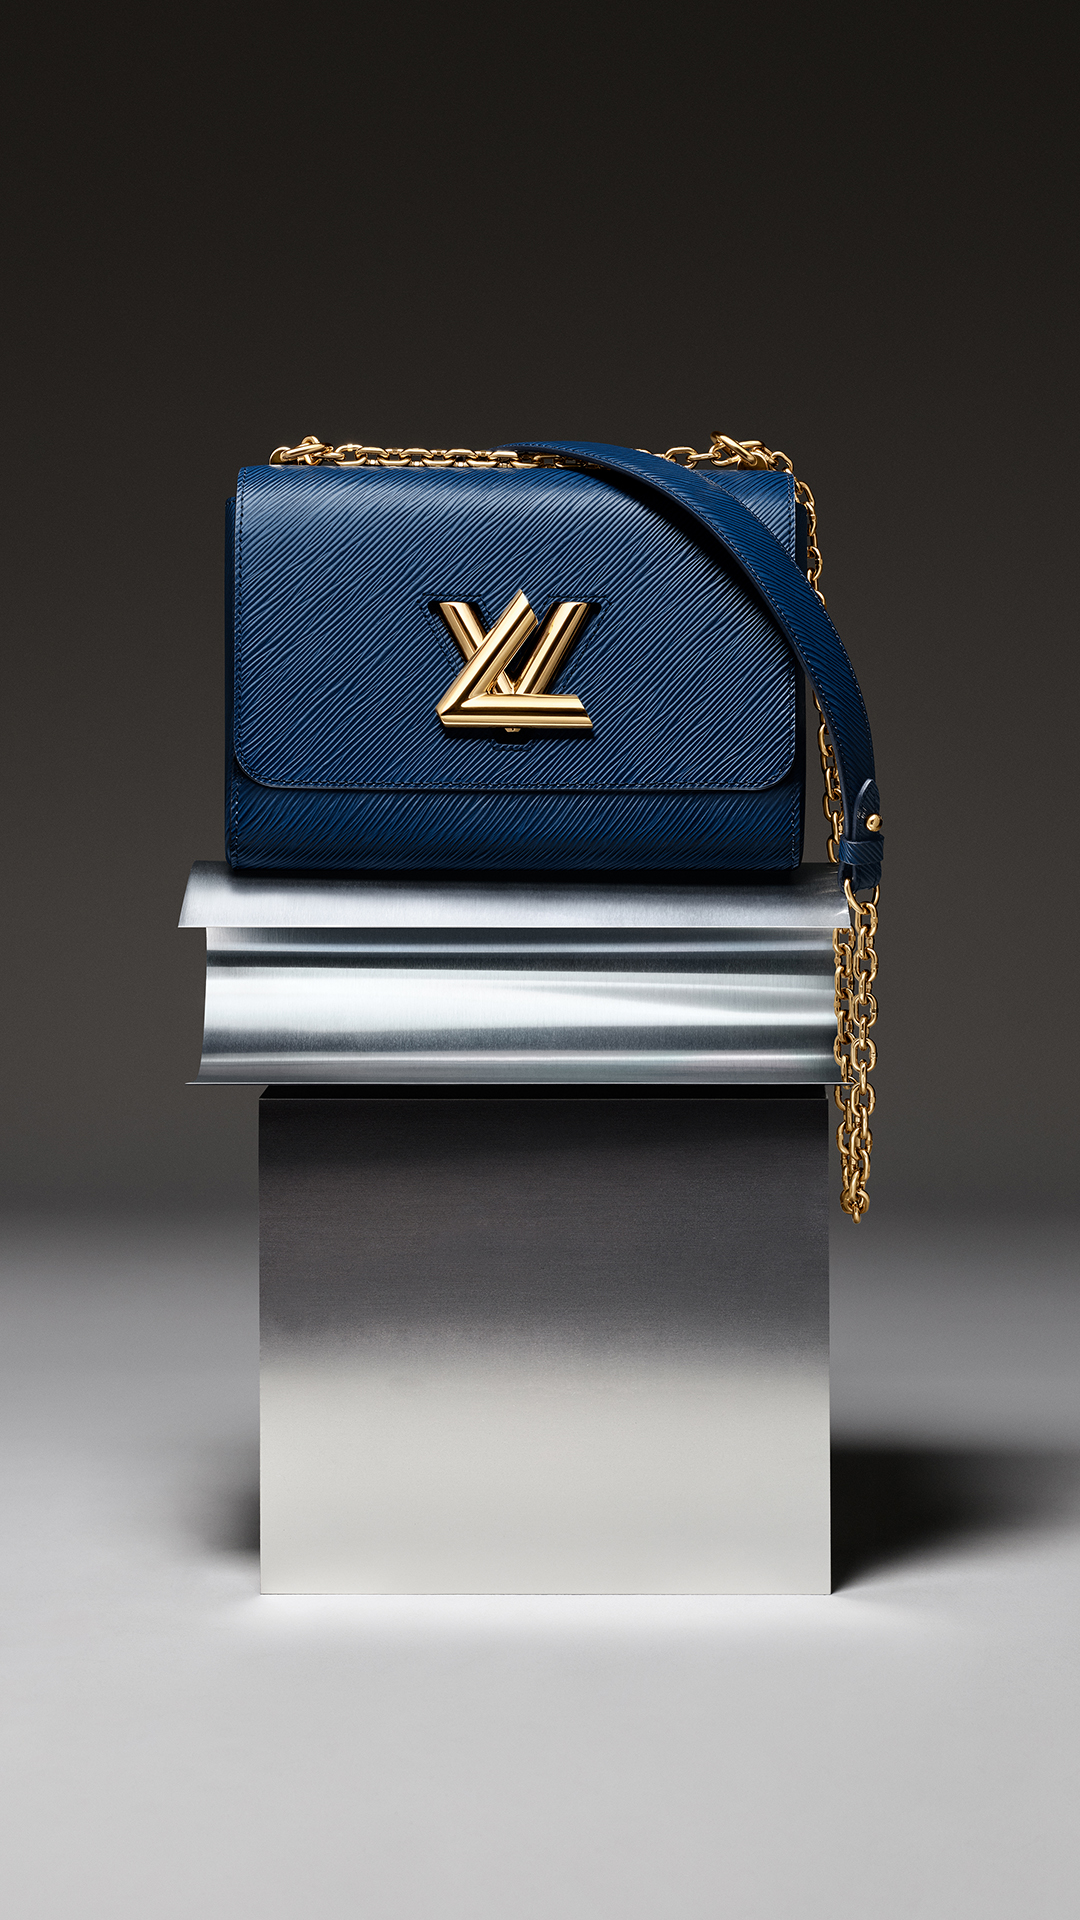 Túi LV Twist màu xanh dương nhà Louis Vuitton